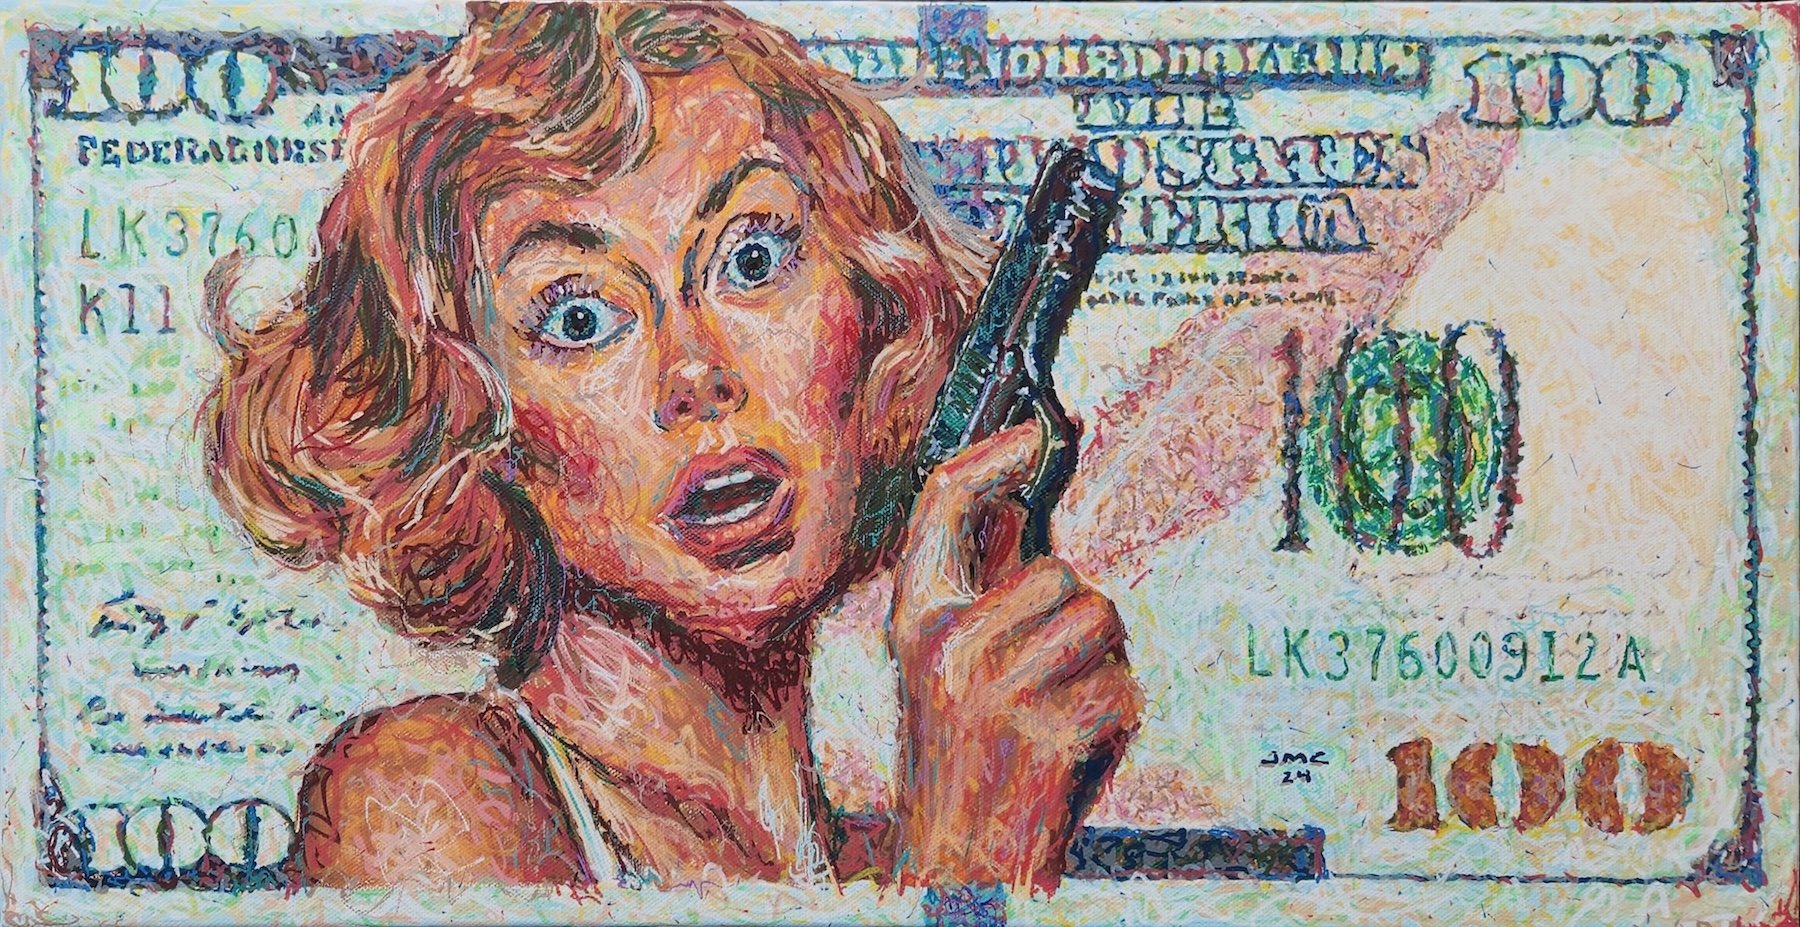    Franklin Shakedown  , 12” x 24”, acrylic on canvas 